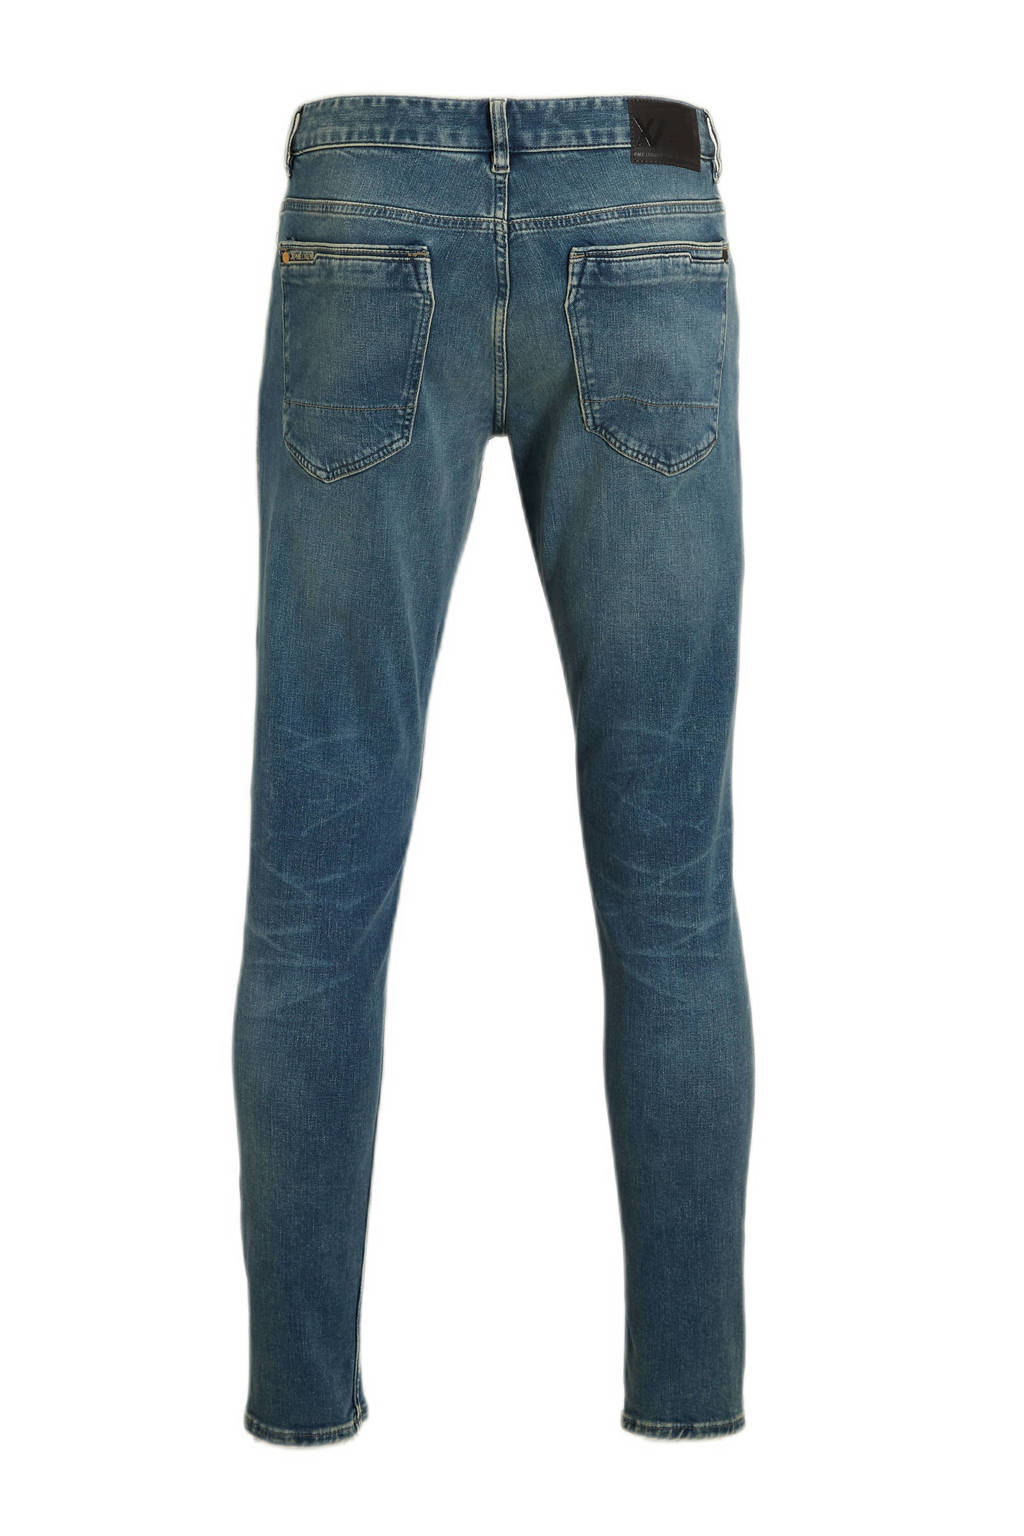 | fit Legend sky jeans Union wash dirt PME XV slim River